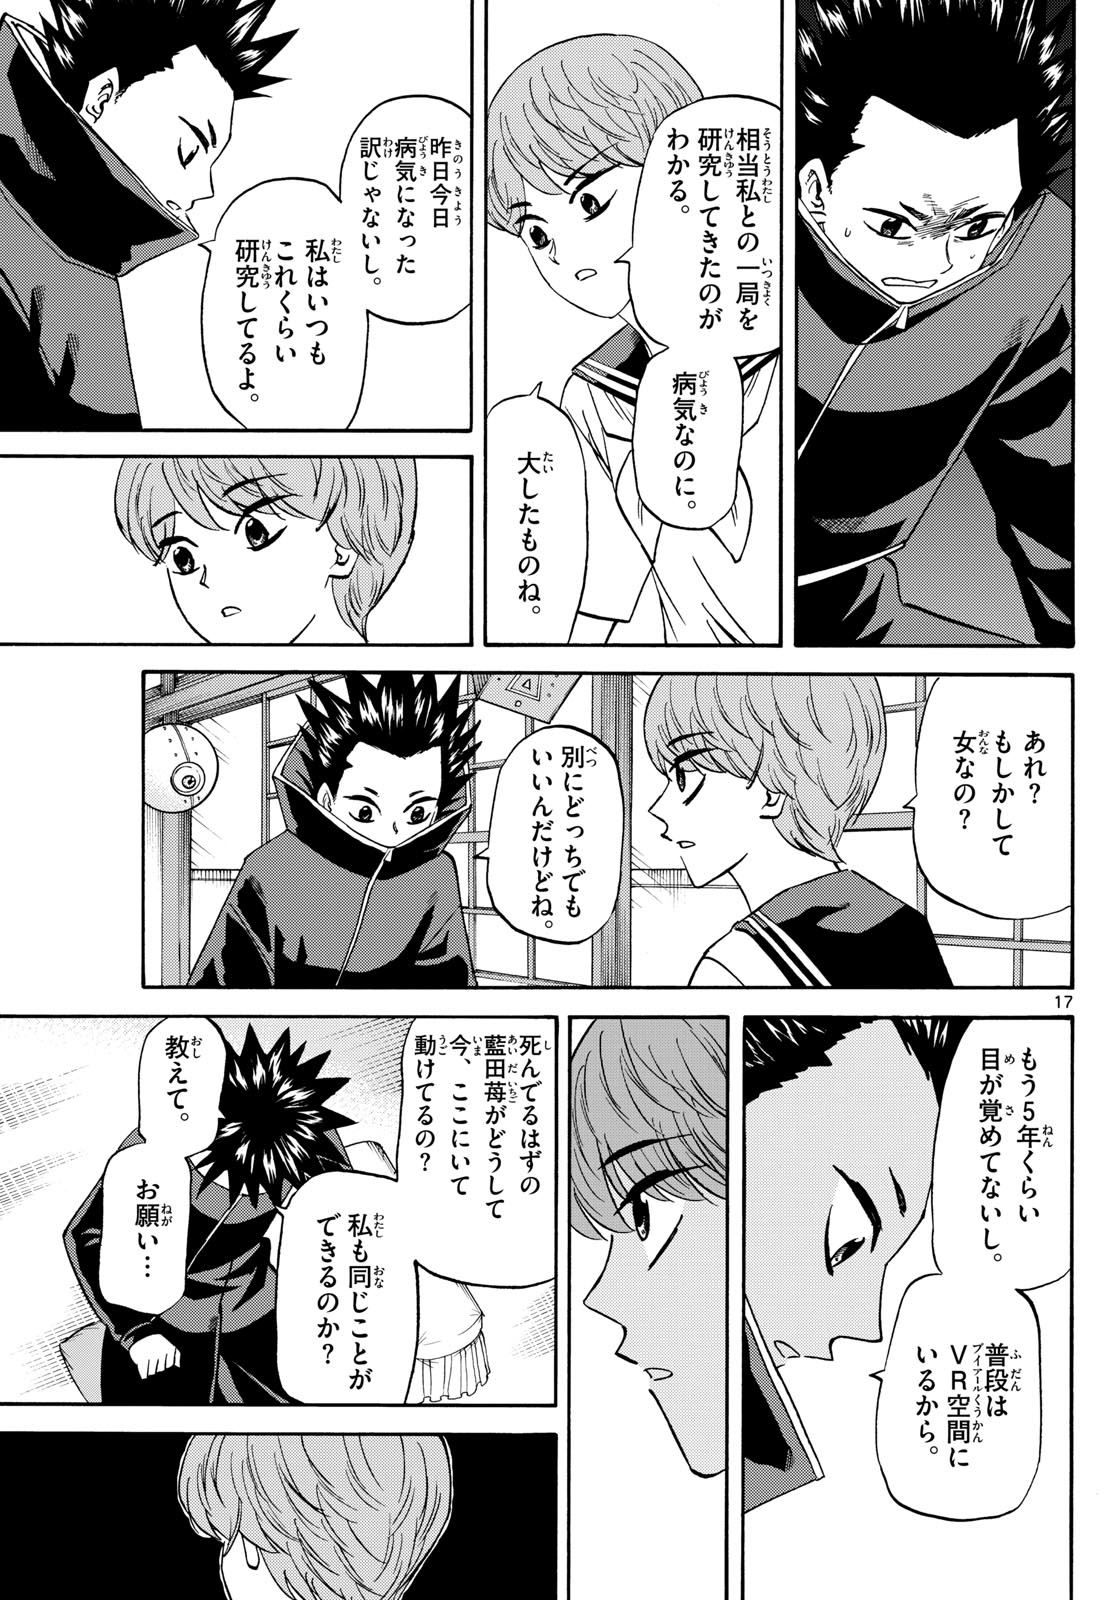 Tatsu to Ichigo - Chapter 191 - Page 17